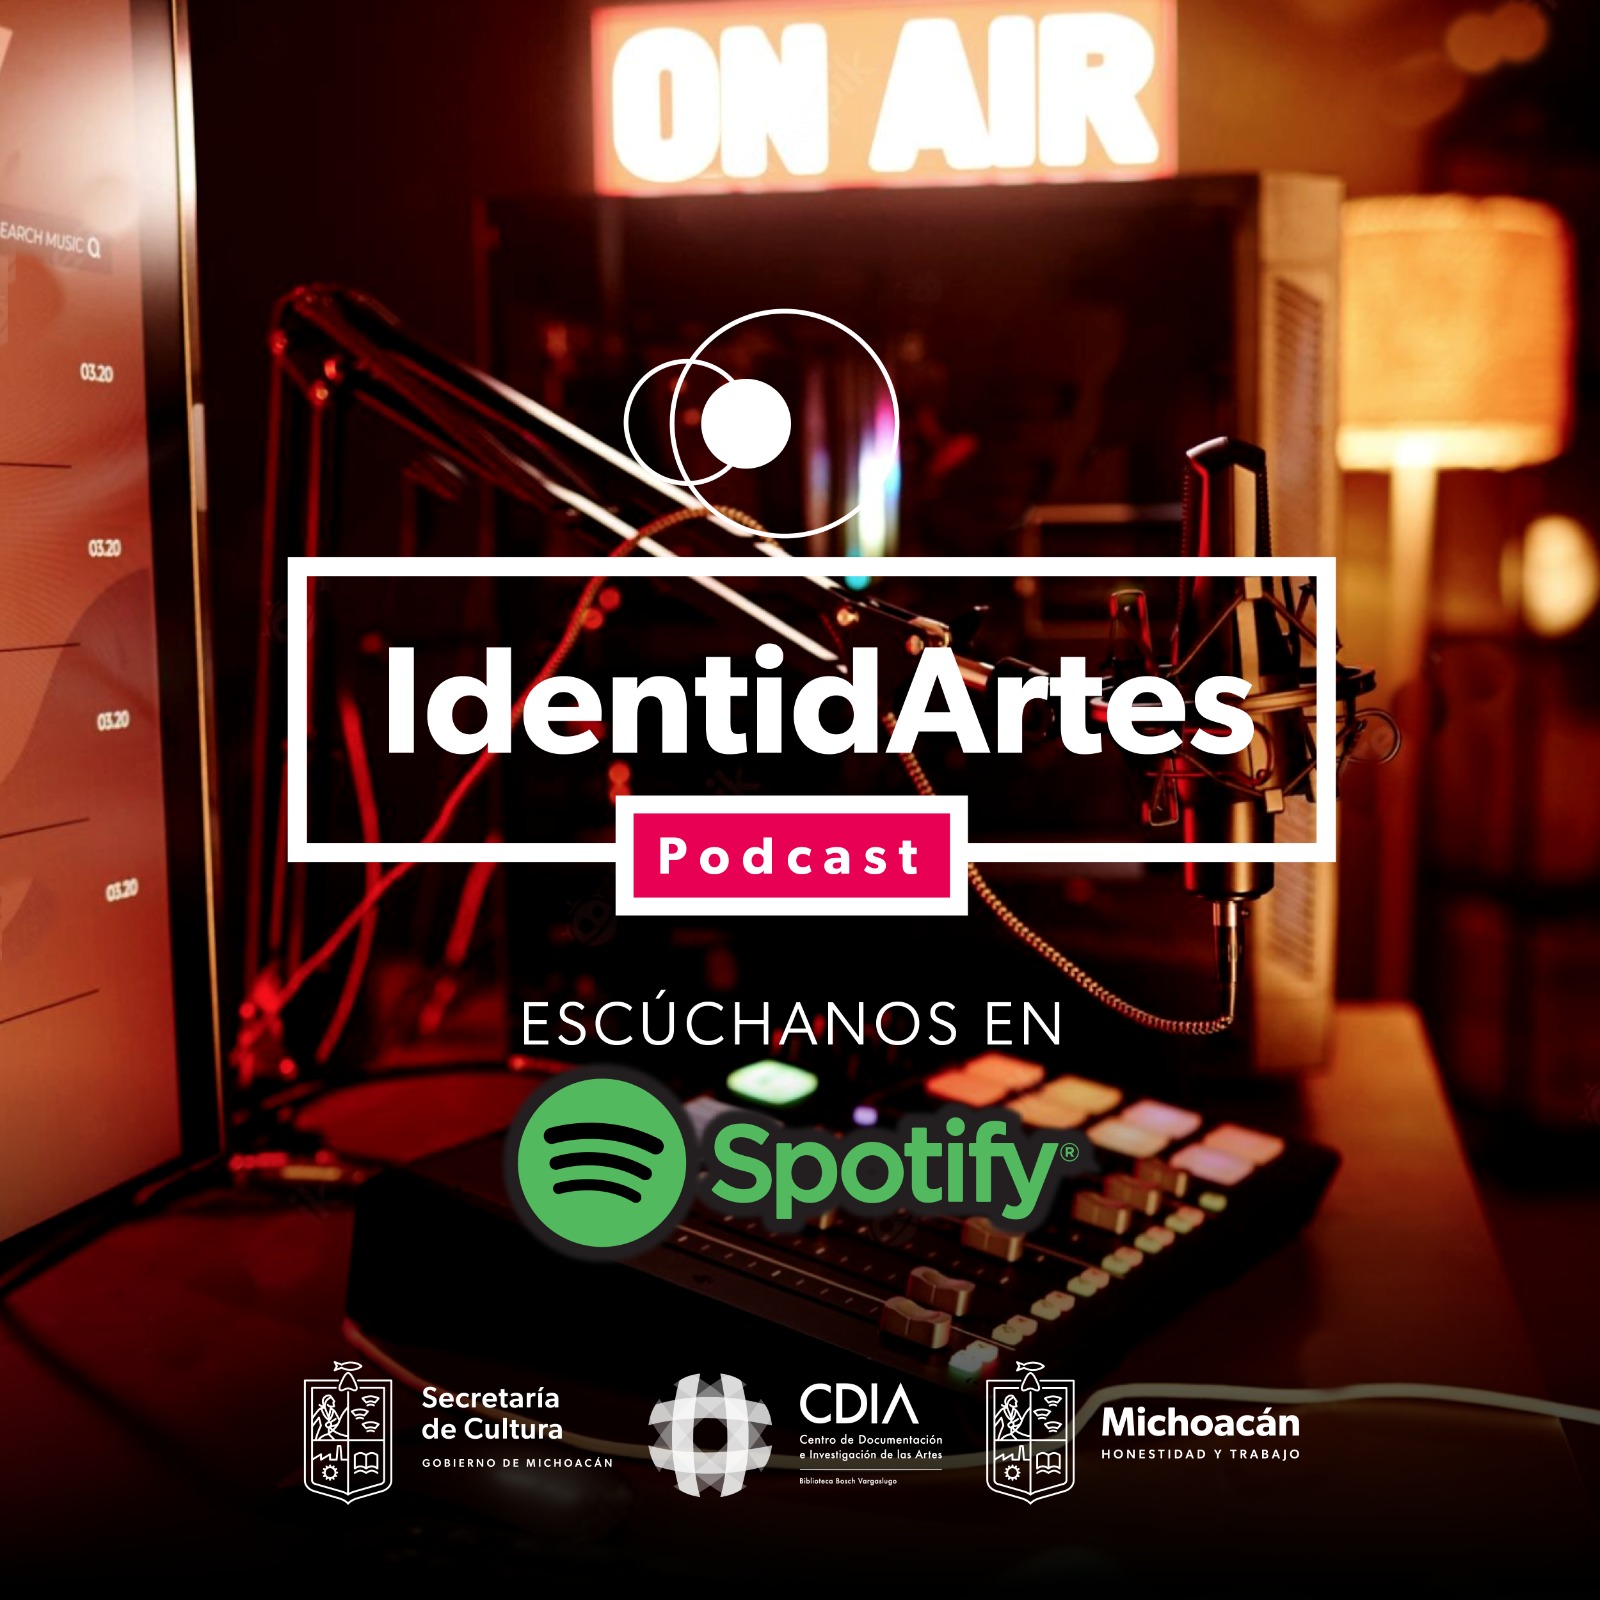 Escucha el nuevo podcast IdentidArtes en la plataforma Spotify